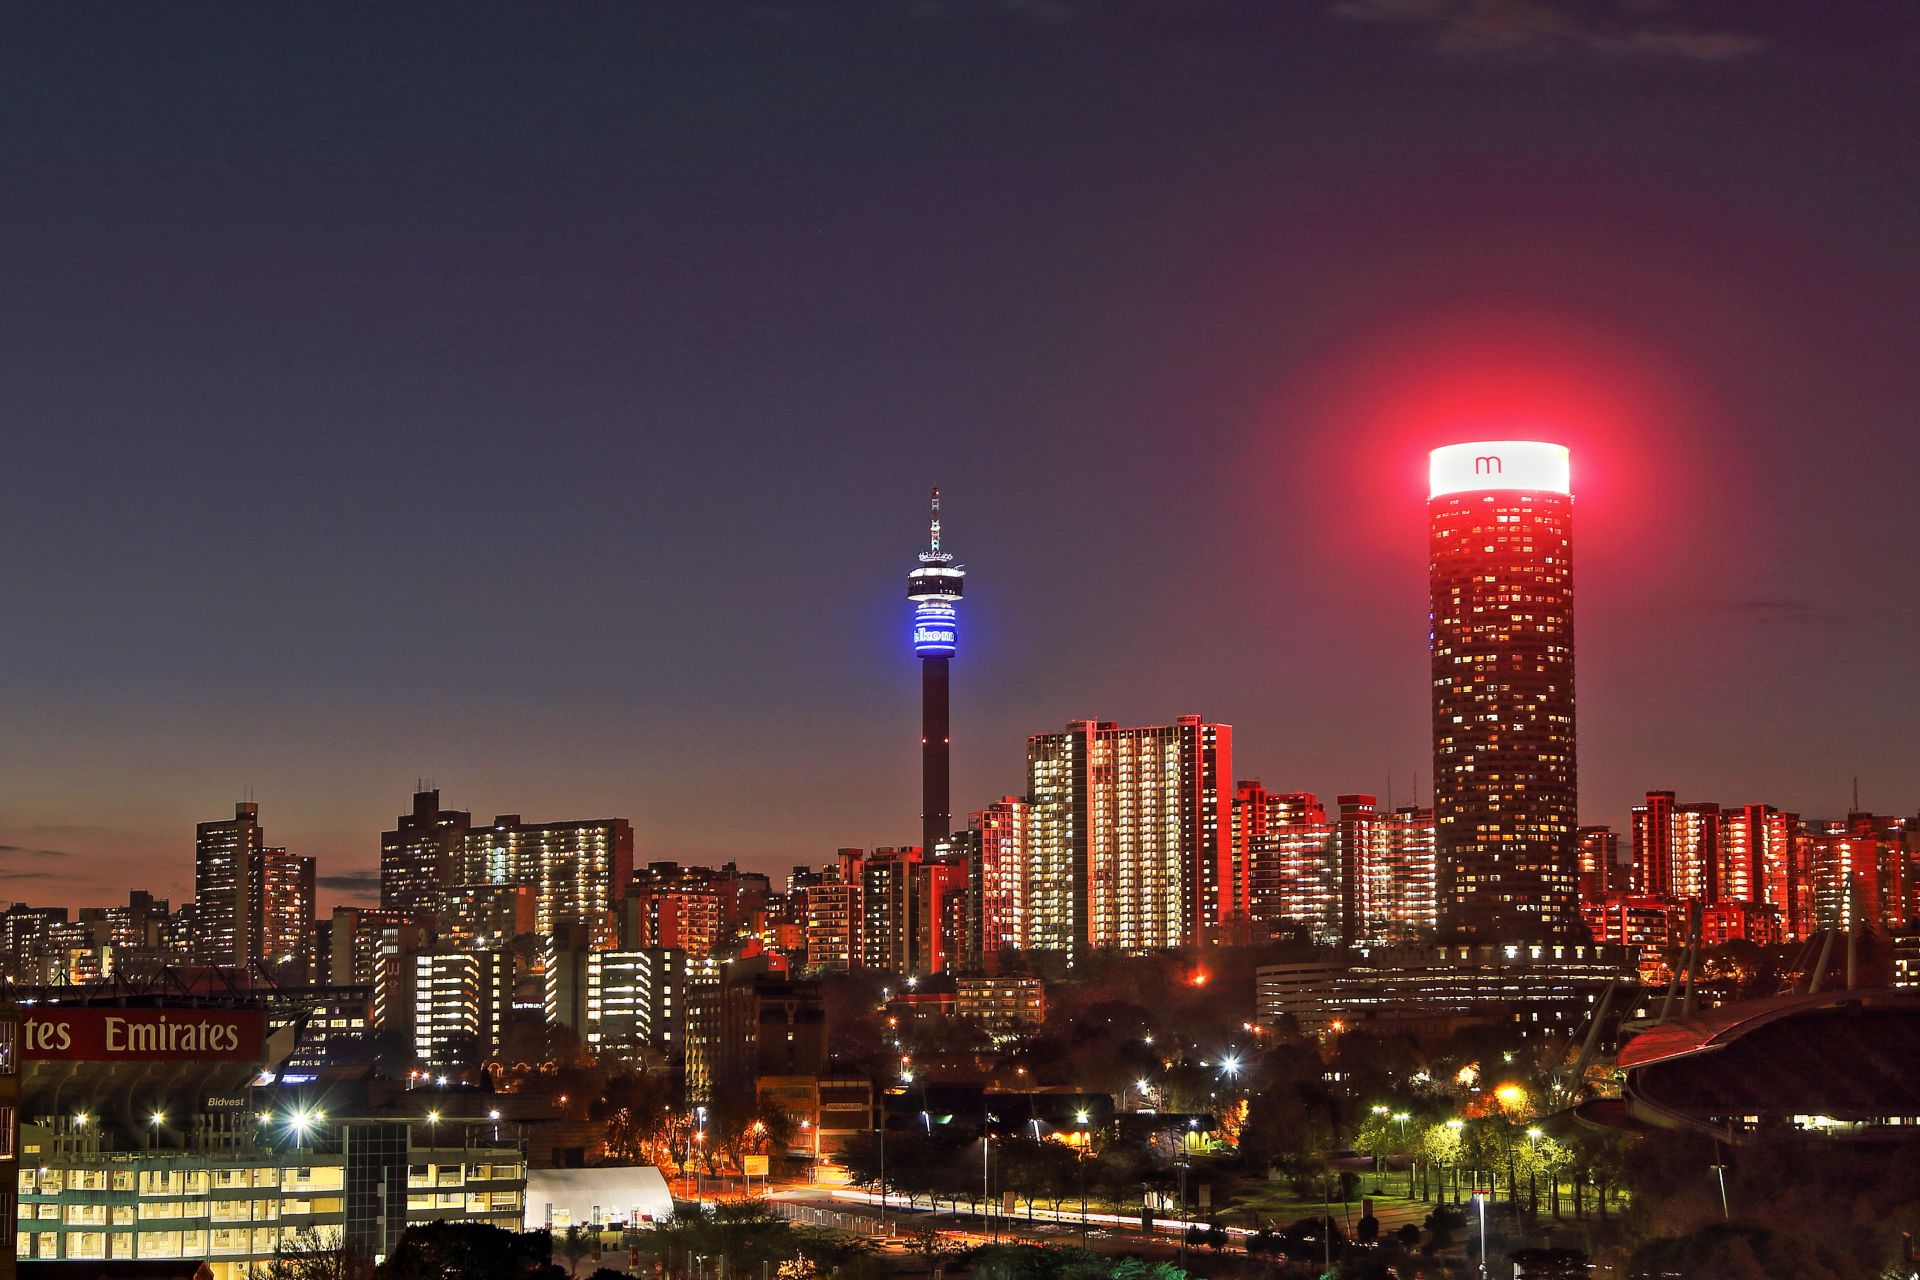 Vista de la ciudad de Johannesburgo al atardecer